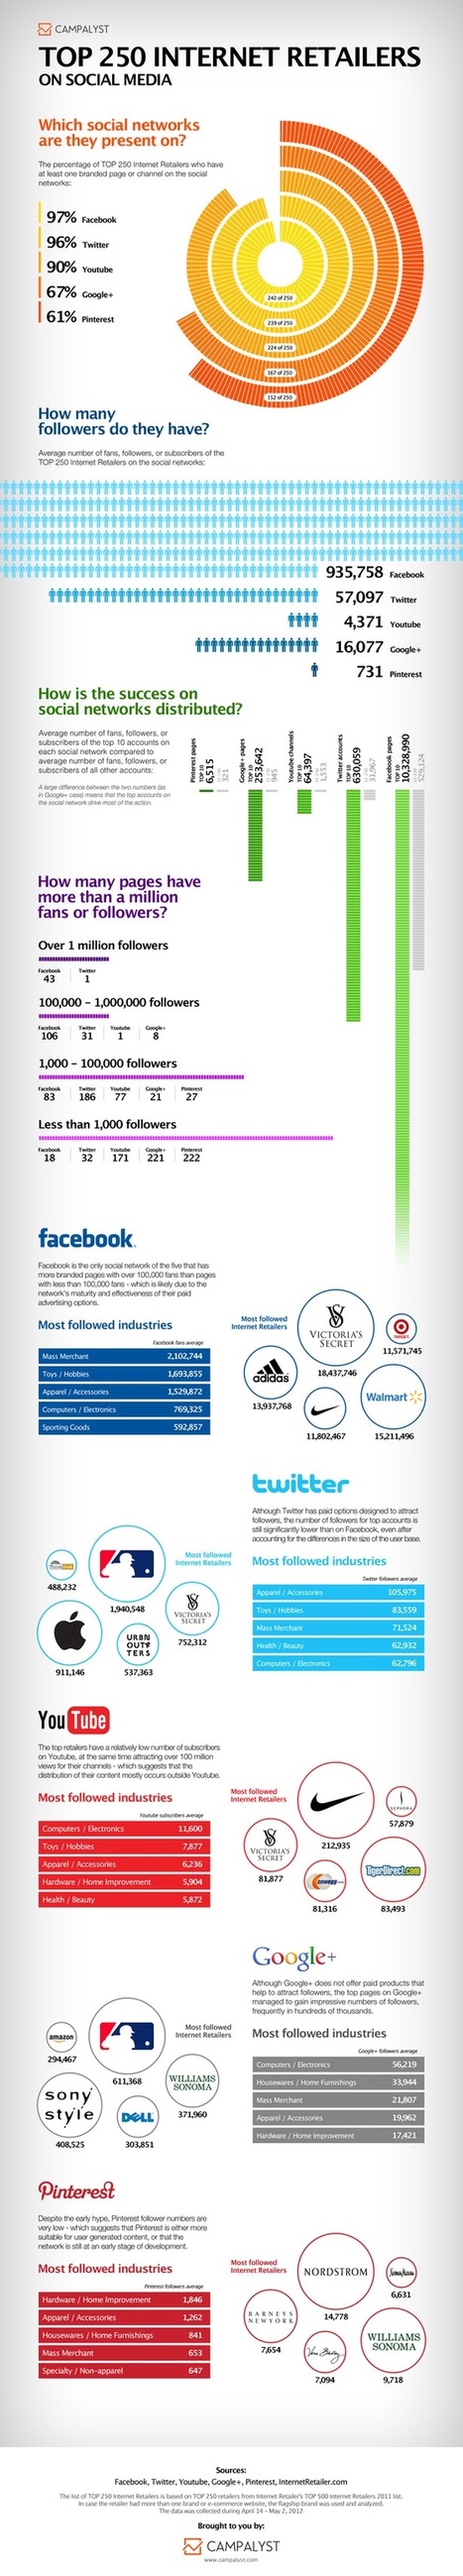 Top 250 Social Internet Retailers | Marketing_me | Scoop.it